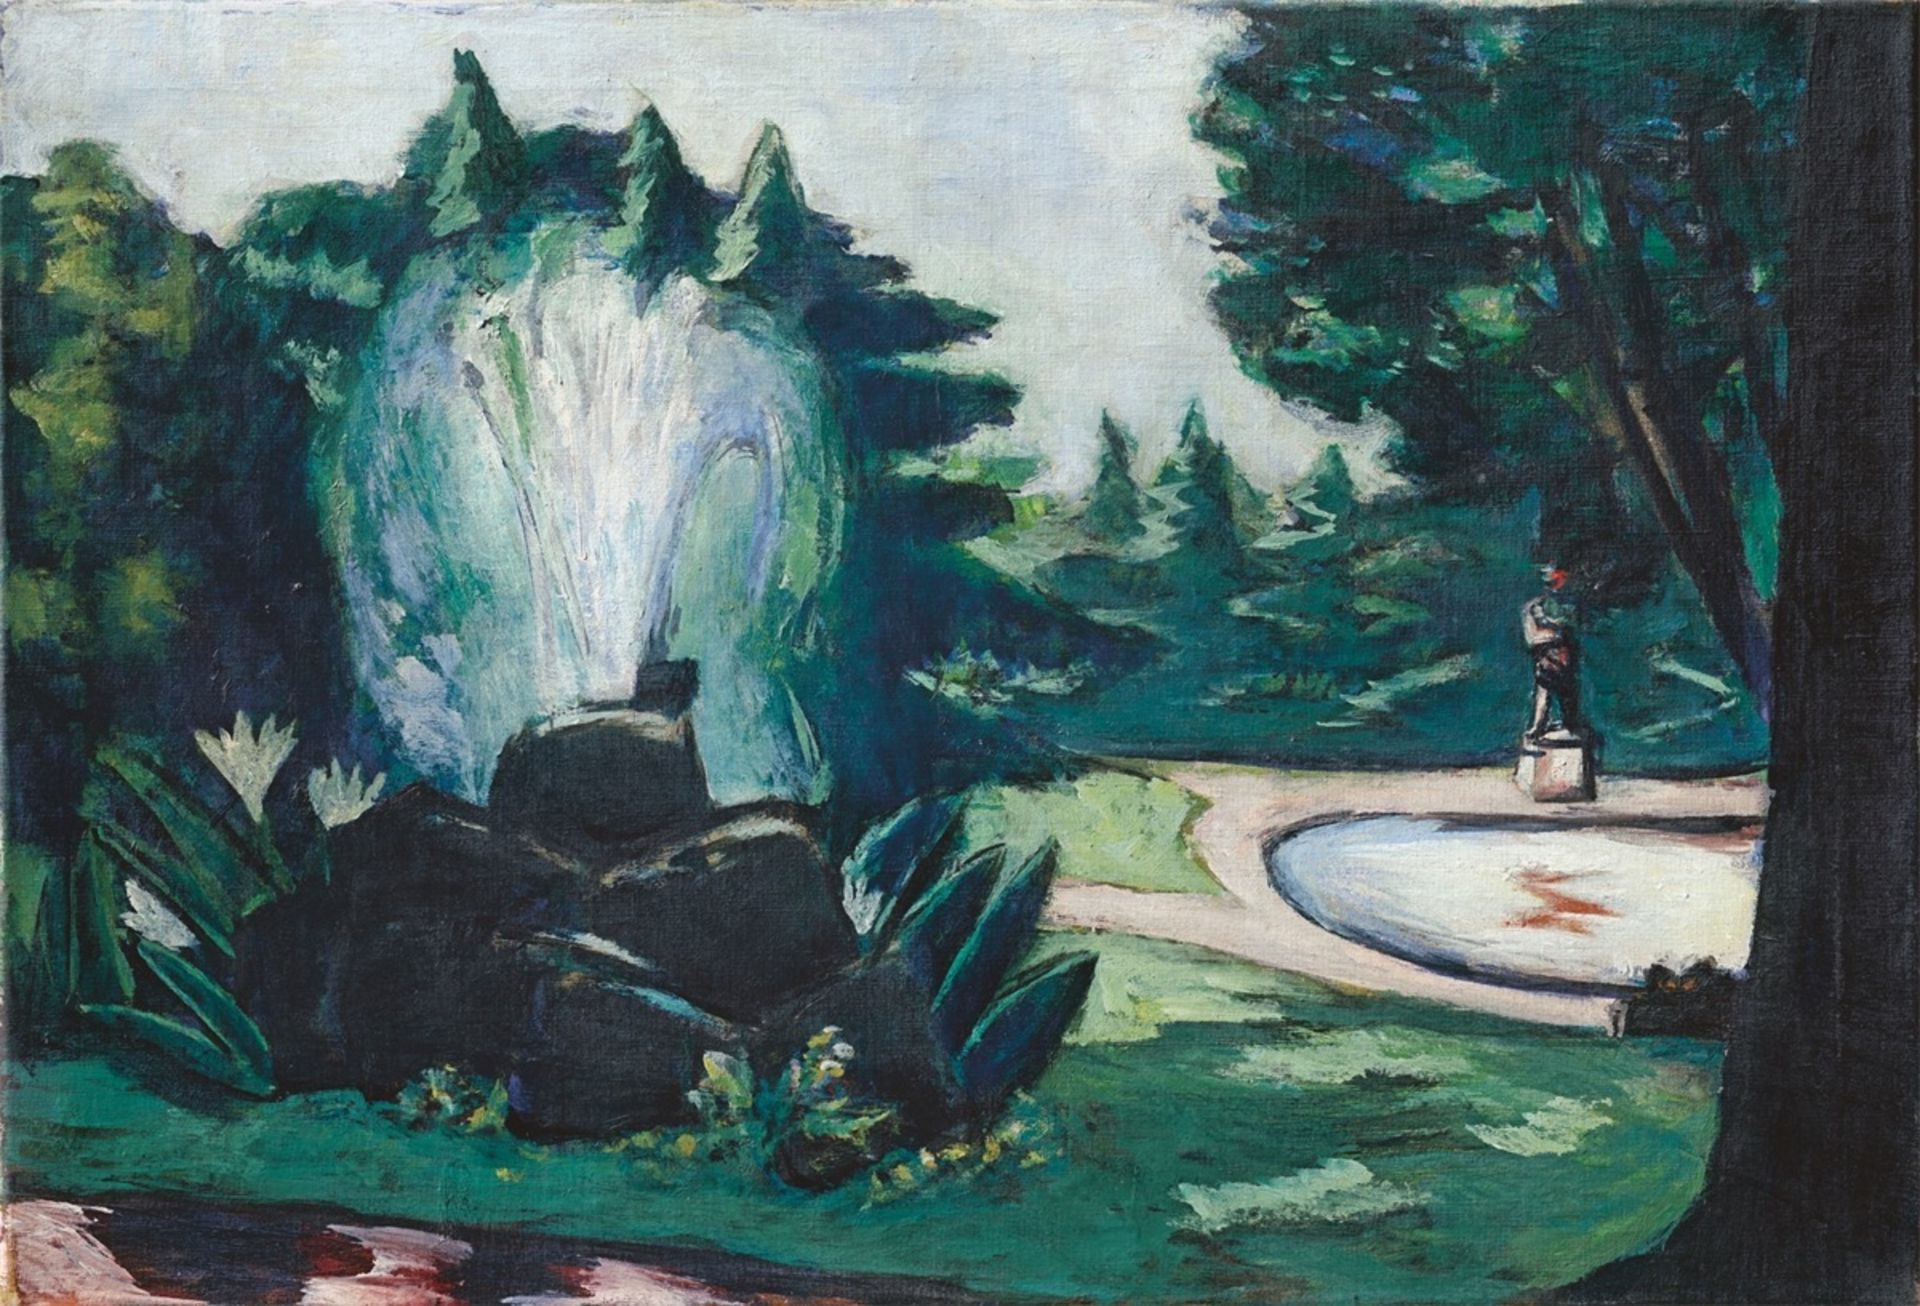 Max Beckmann. ”Springbrunnen in Baden-Baden”. 1936